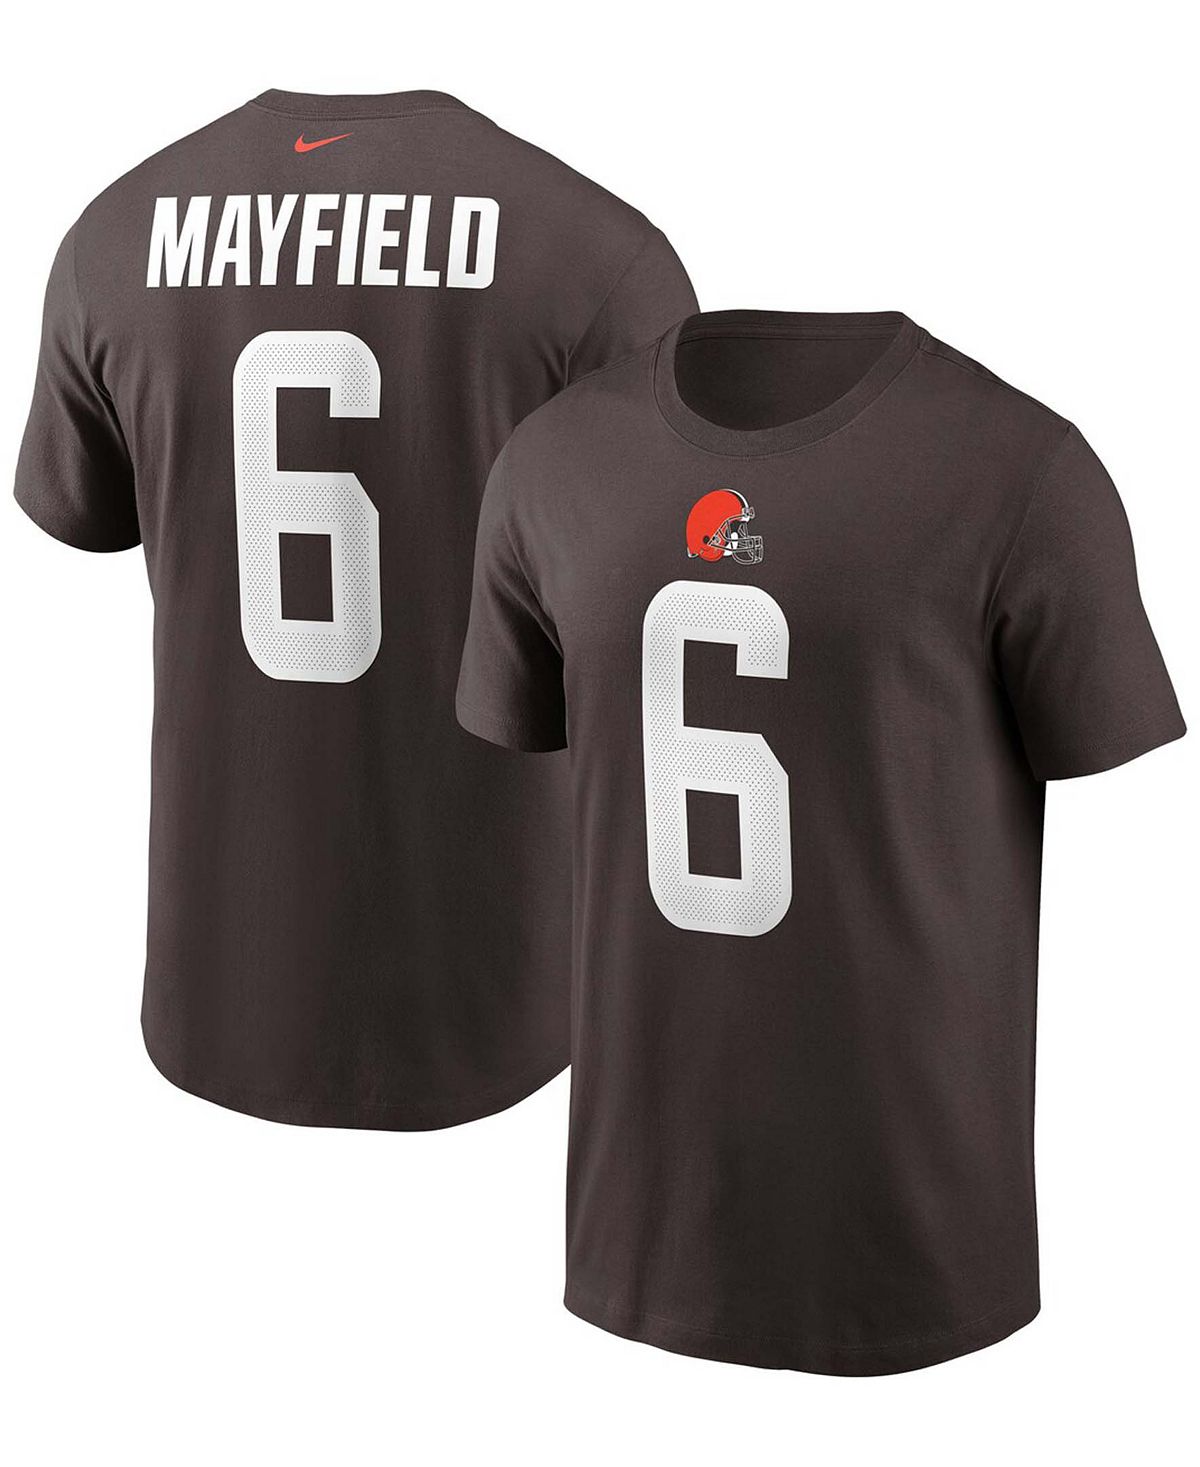 Мужская футболка с именем и номером Cleveland Browns Baker Mayfield Nike торт бисквитный фили бейкер любимый ключик 1 кг